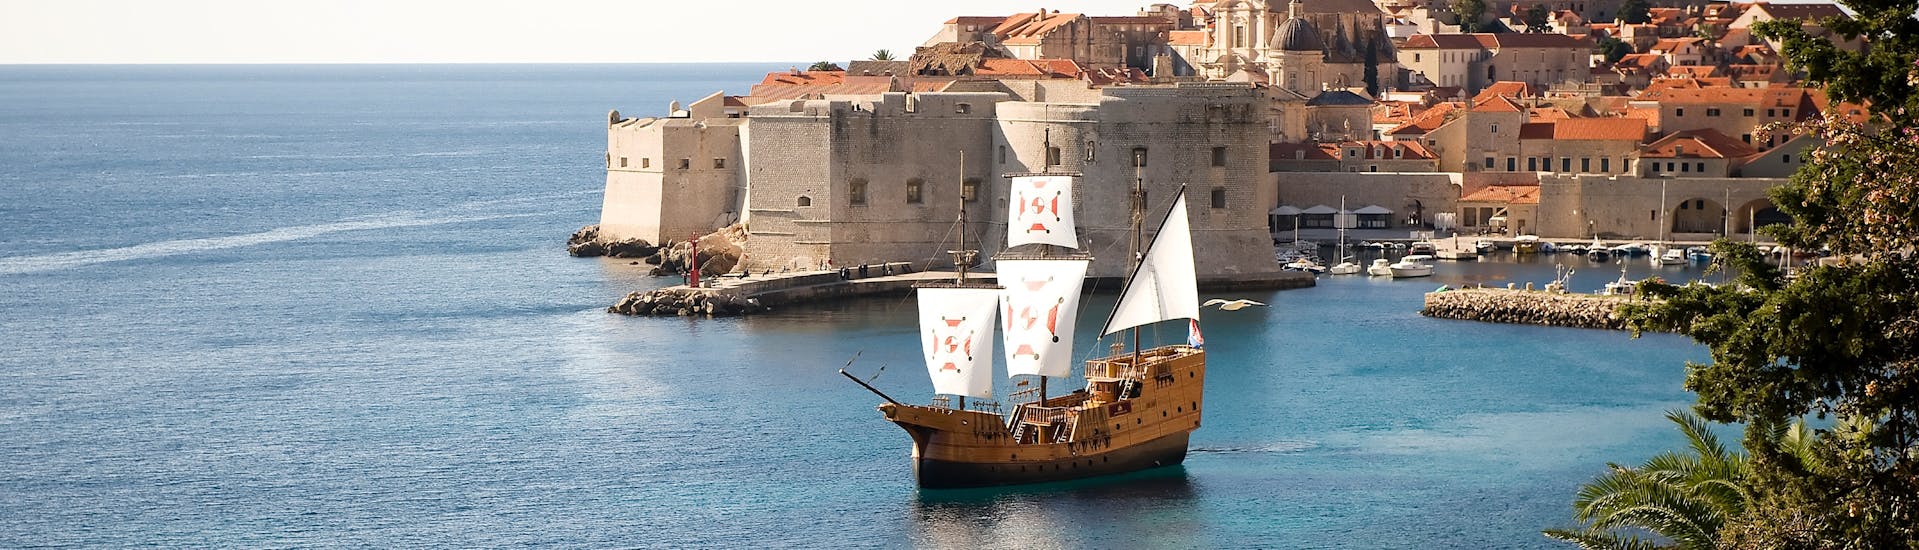 Paseo en barco alrededor del casco antiguo de Dubrovnik con tour a pie.